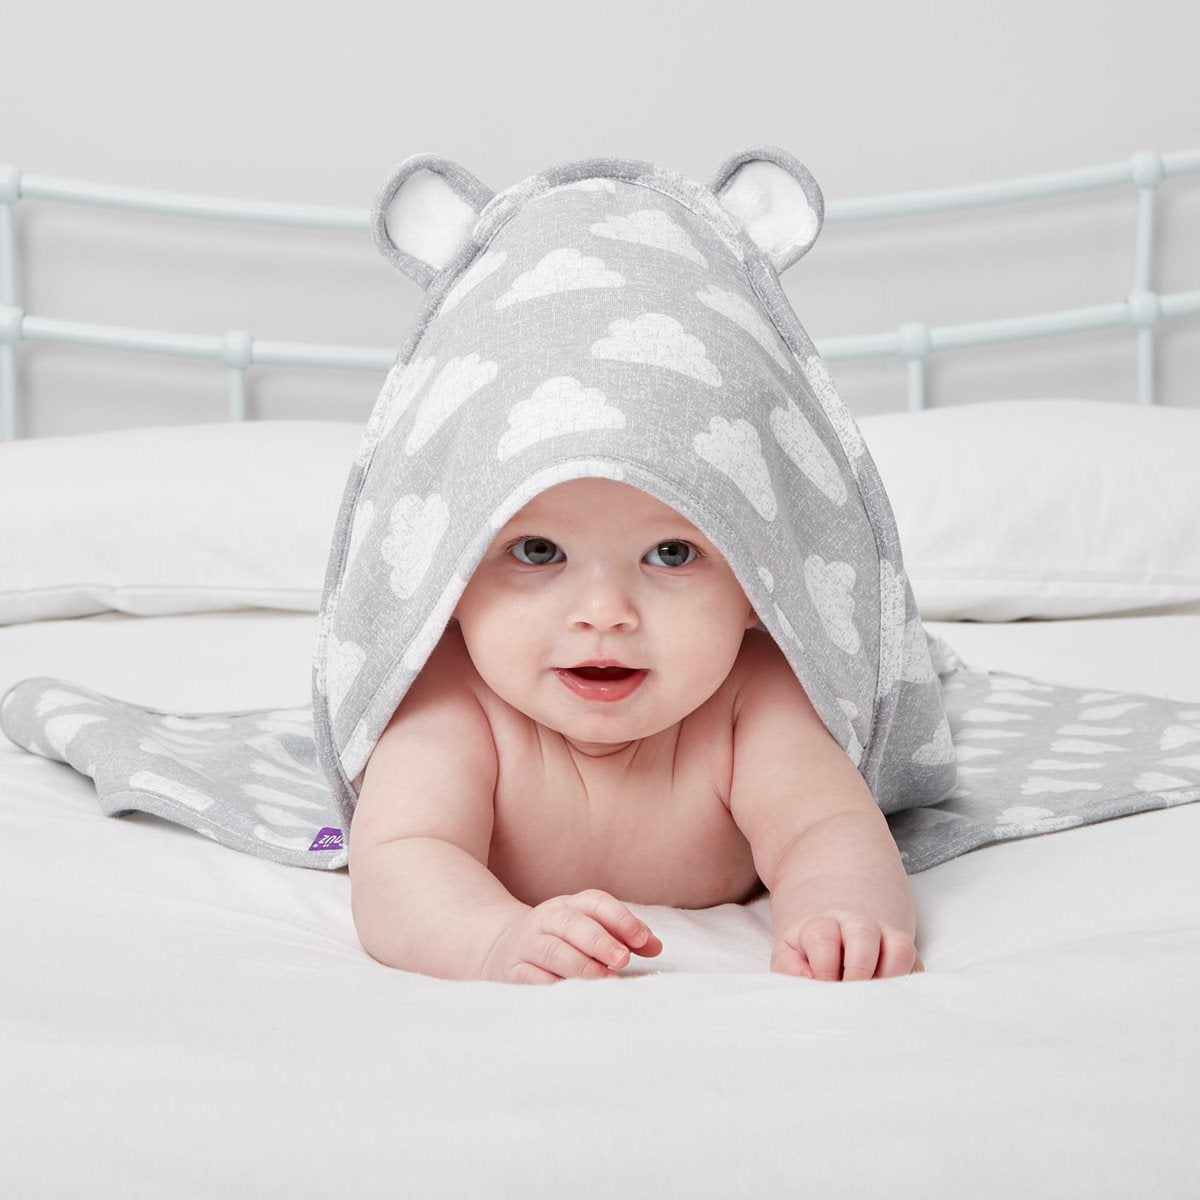 Snuz Baby Hooded Towel - Cloud Nine